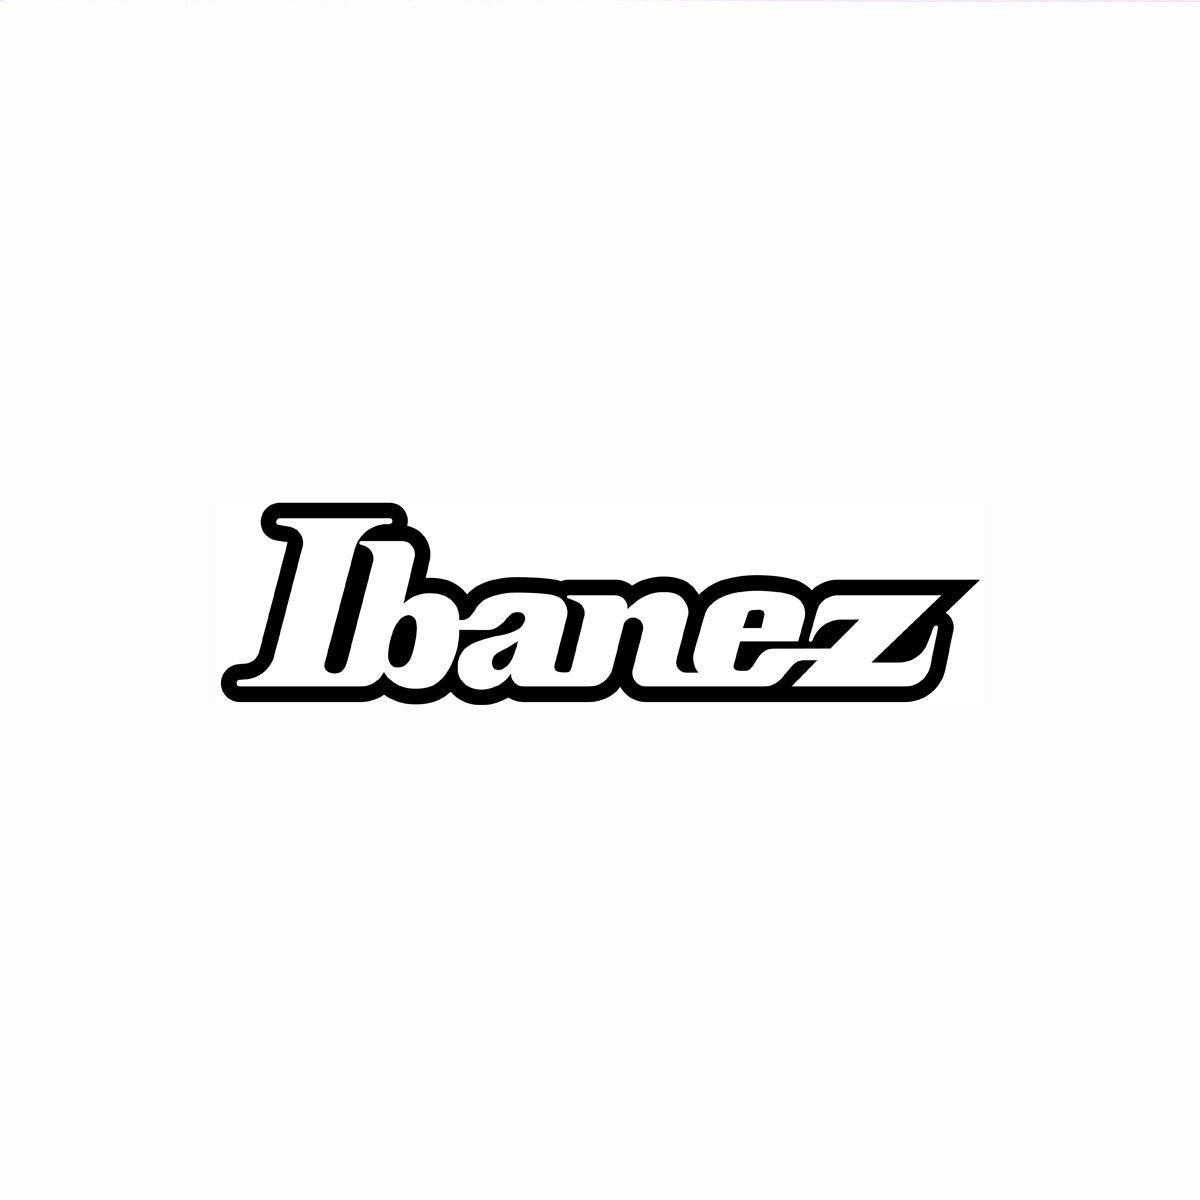 Ibanez Logo - Ibanez Logos